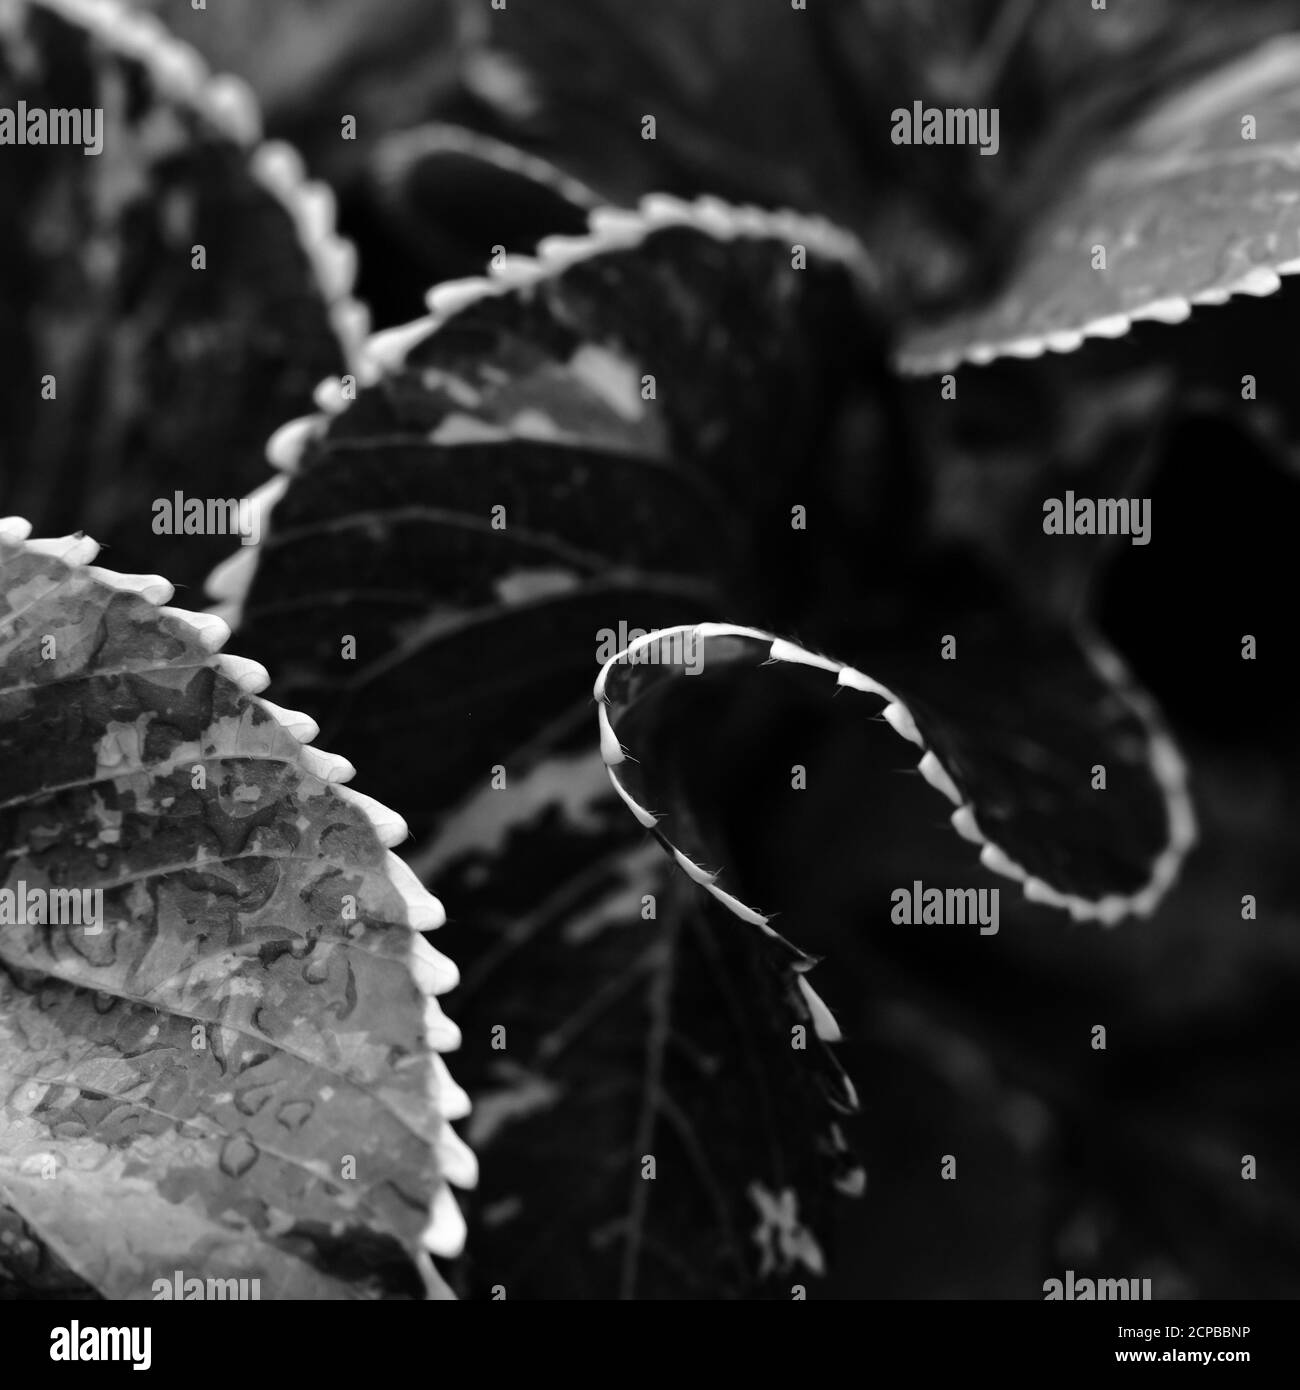 Un'immagine di profondità di campo poco profonda selezionata sulla macro di foglie con punta bianca con motivi in bianco e nero Foto Stock